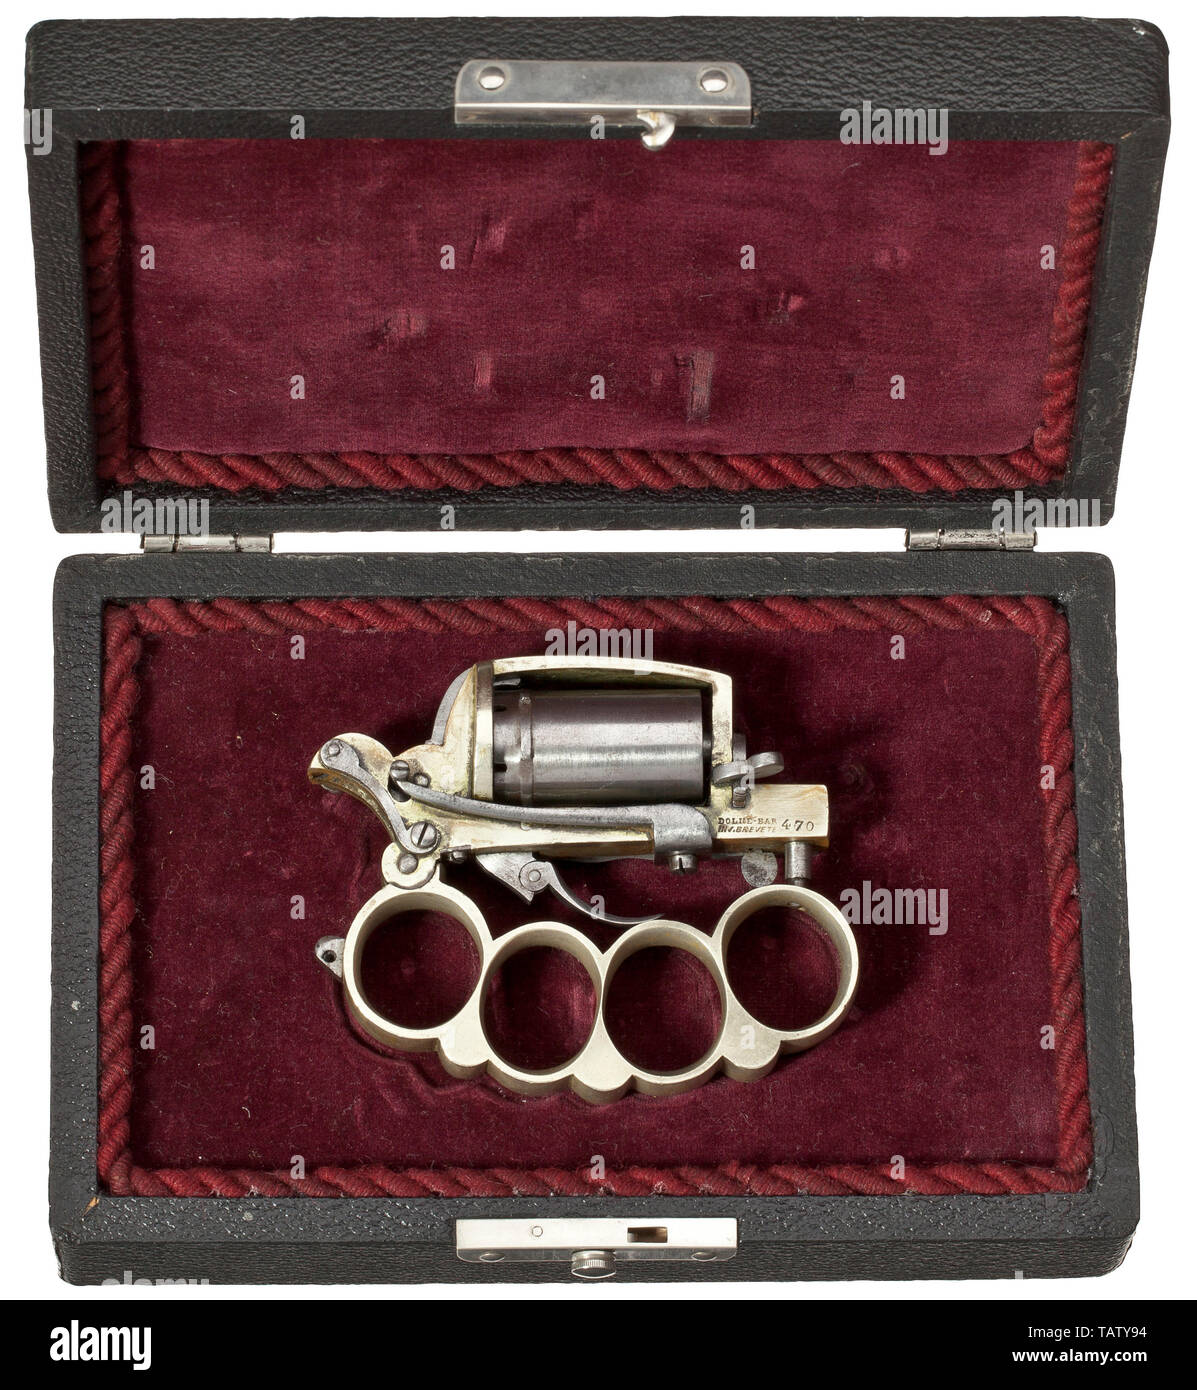 Un 'apache' revolver Dolne Sistema, nel suo caso, circa 1870, una combinazione di revolver, ondulata pugnale e knuckleduster. In rari calibro 5 mm SF. n. 470. Parte anteriore destra del telaio firmato 'DOLNE-BAR / INV.BREVETE 470'. Prodotte in Liegi. Doppia azione. I primi modelli con unfluted, sei-shot cilindro. Trigger di piegatura. Cilindro in acciaio, pugnale, trigger, i raccordi e le viti senza fine. Telaio di nichel e knuckleduster, parzialmente alcune macchie. Molto buona condizione globale di un raro oggetto da collezione. Per una pulizia delicata può migliorare l'aspetto. È disponibile in nero, più tardi ho, Additional-Rights-Clearance-Info-Not-Available Foto Stock